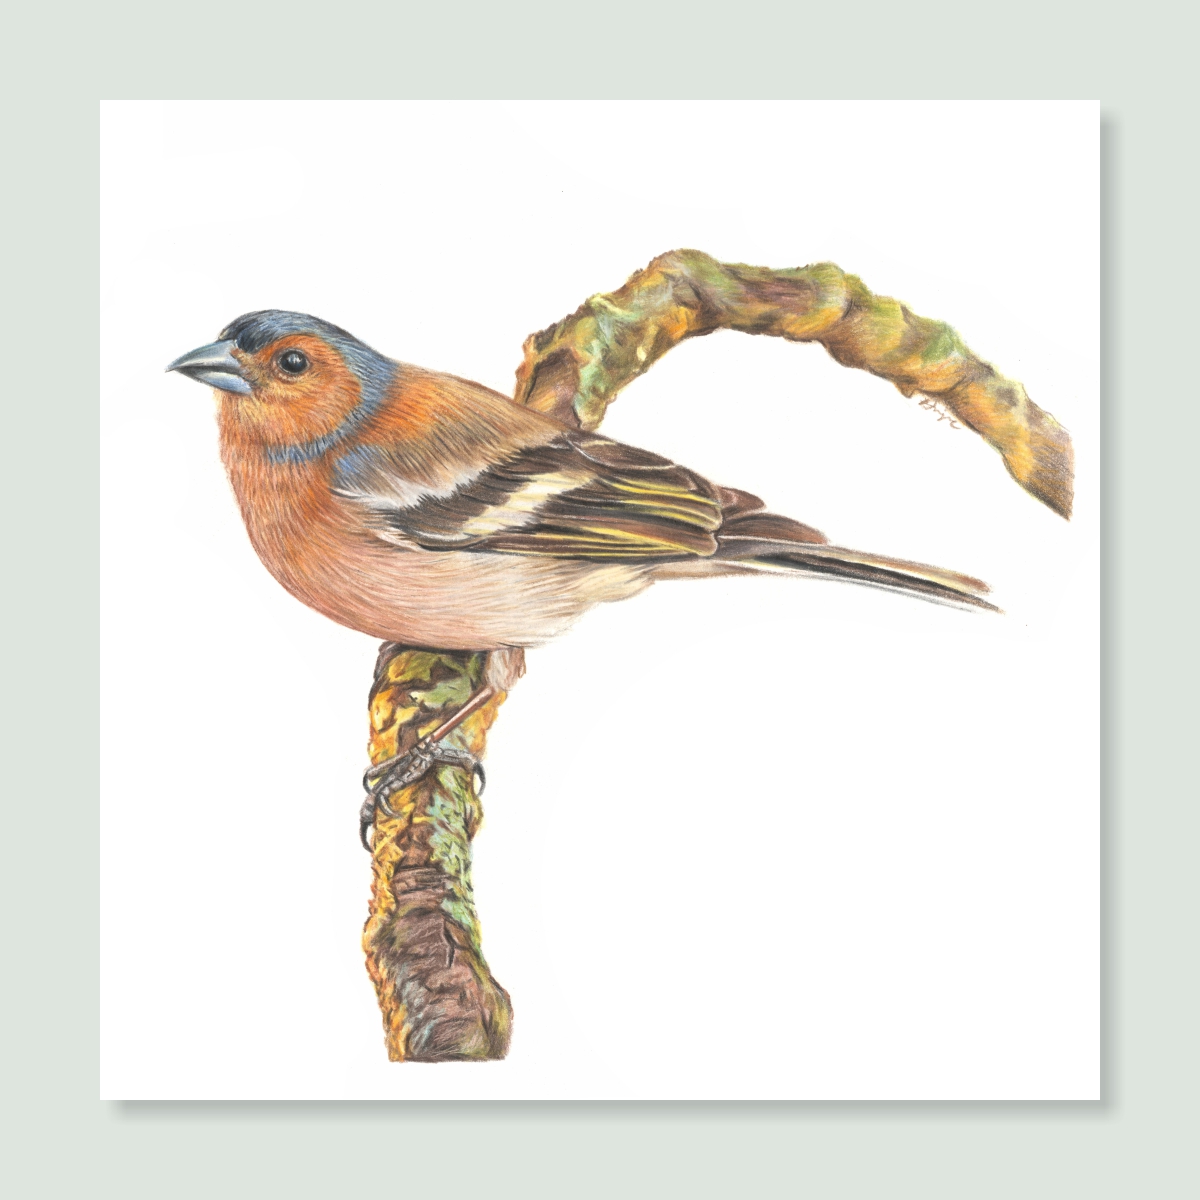 UK Garden Bird Collection - Chaffinch study by wildlife artist Angie.